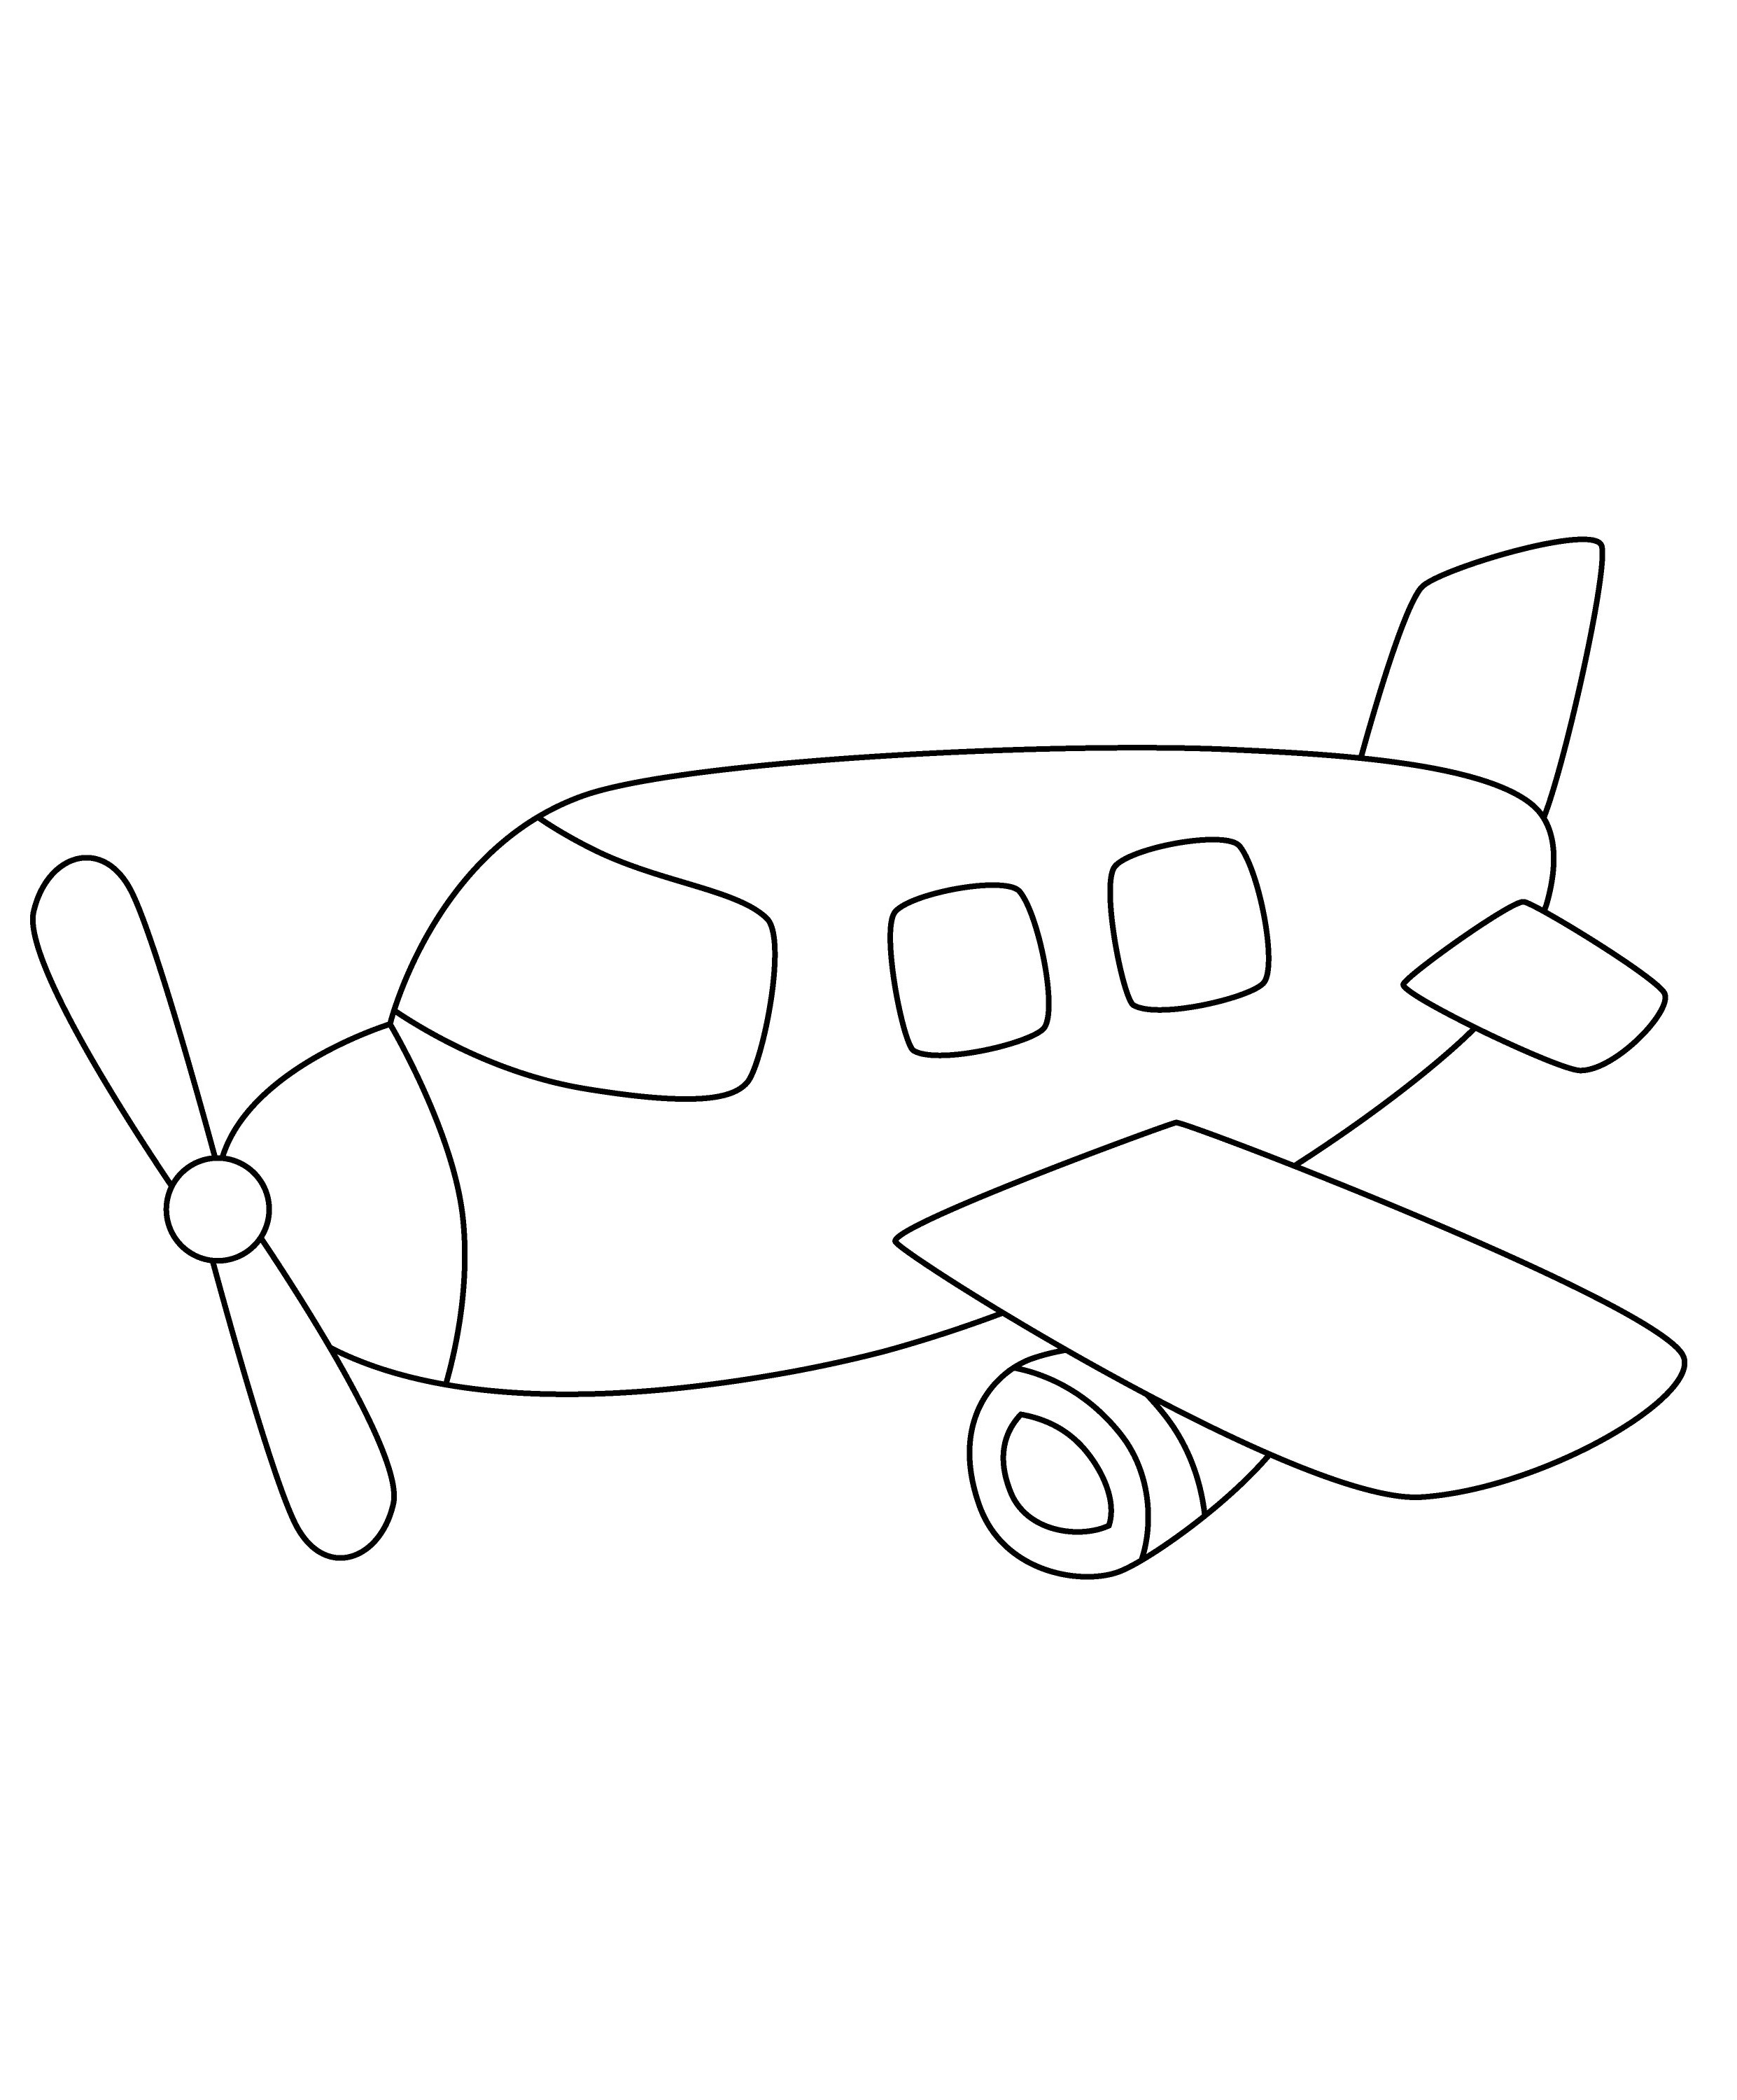 Раскраска самолетик «Алюминиевая птица» формата А4 в высоком качестве